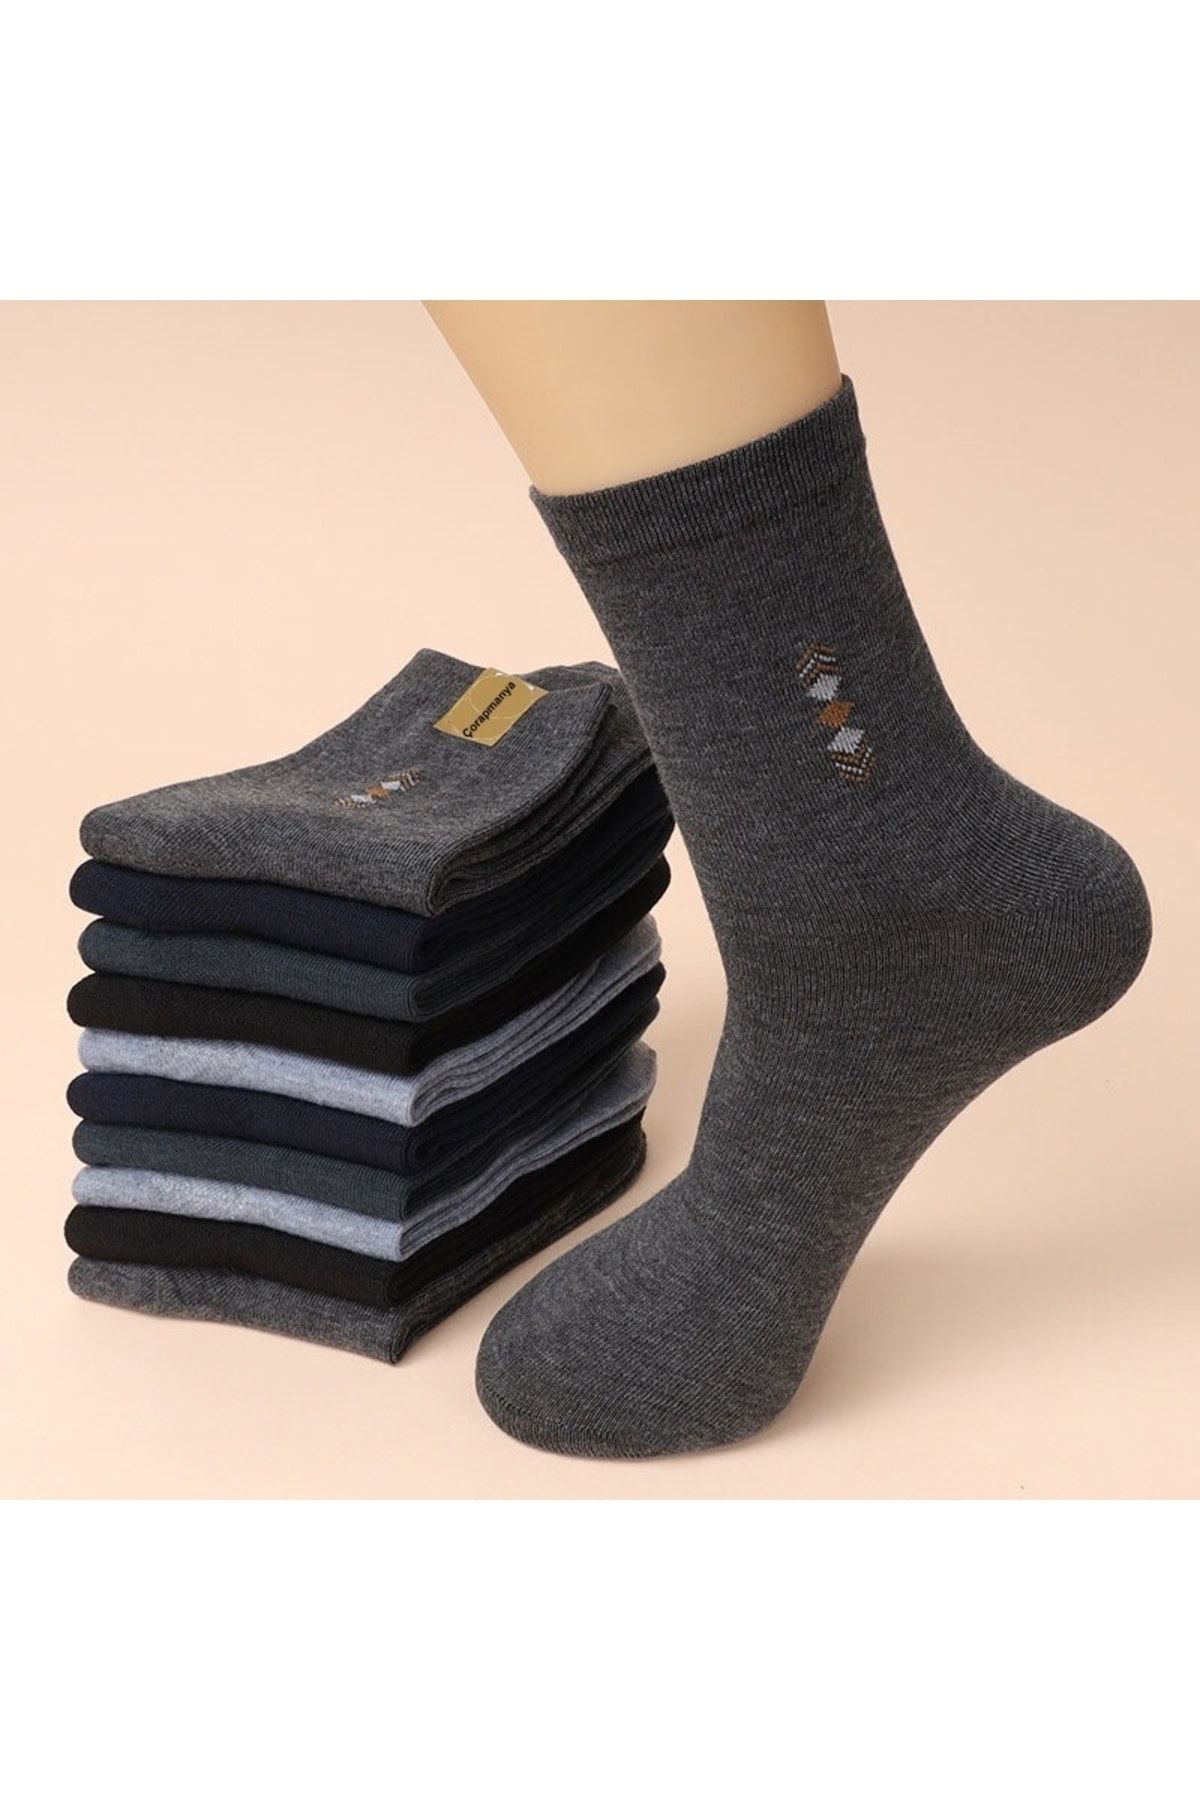 çorapmanya 6 Çift Dikişli Ekonomik Pamuklu Desenli Erkek Soket Çorap